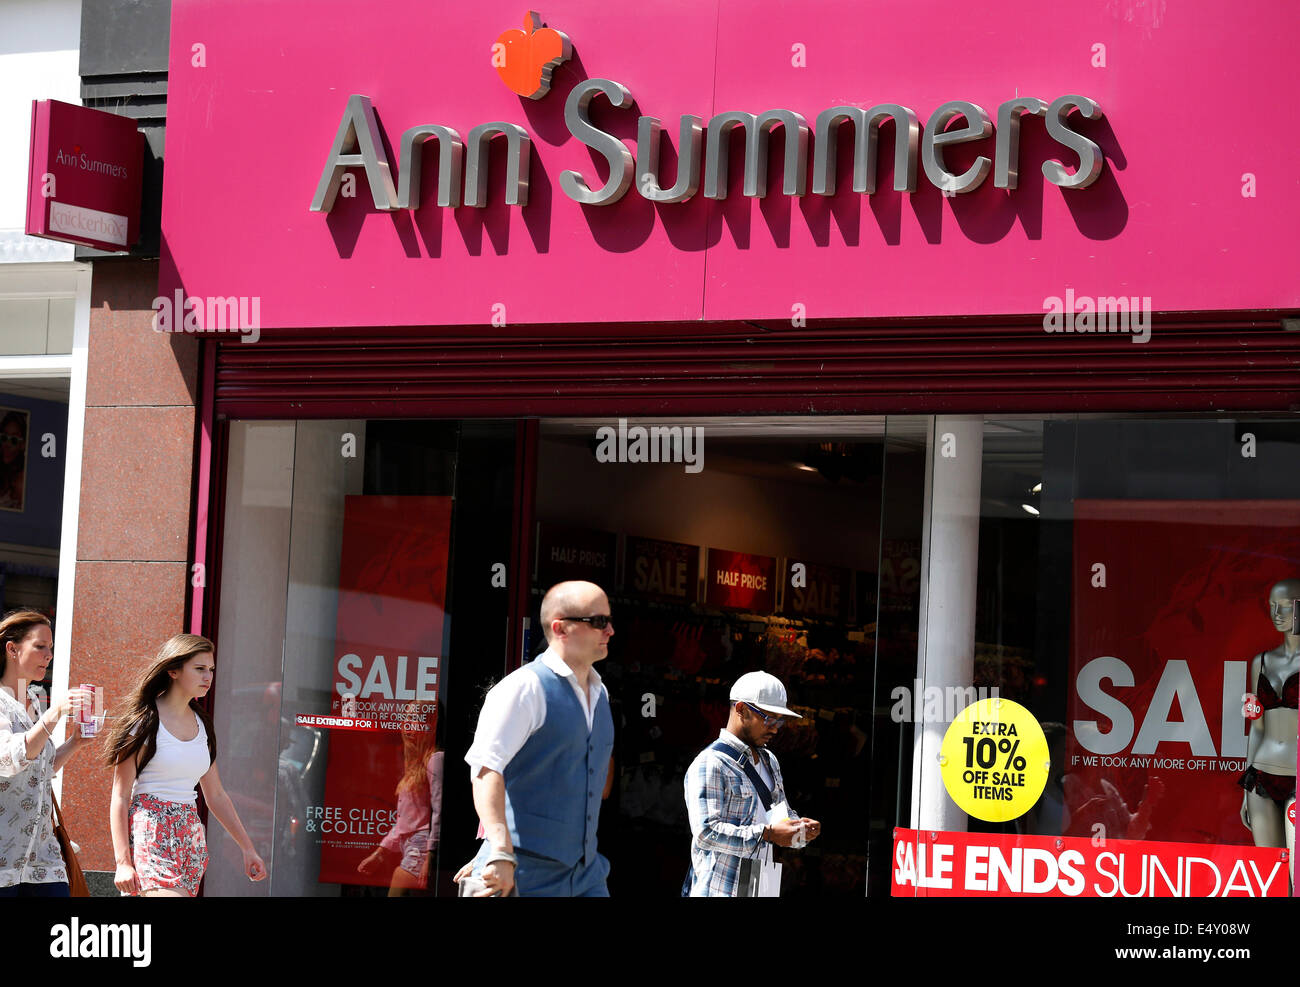 ANN SUMMERS Sale